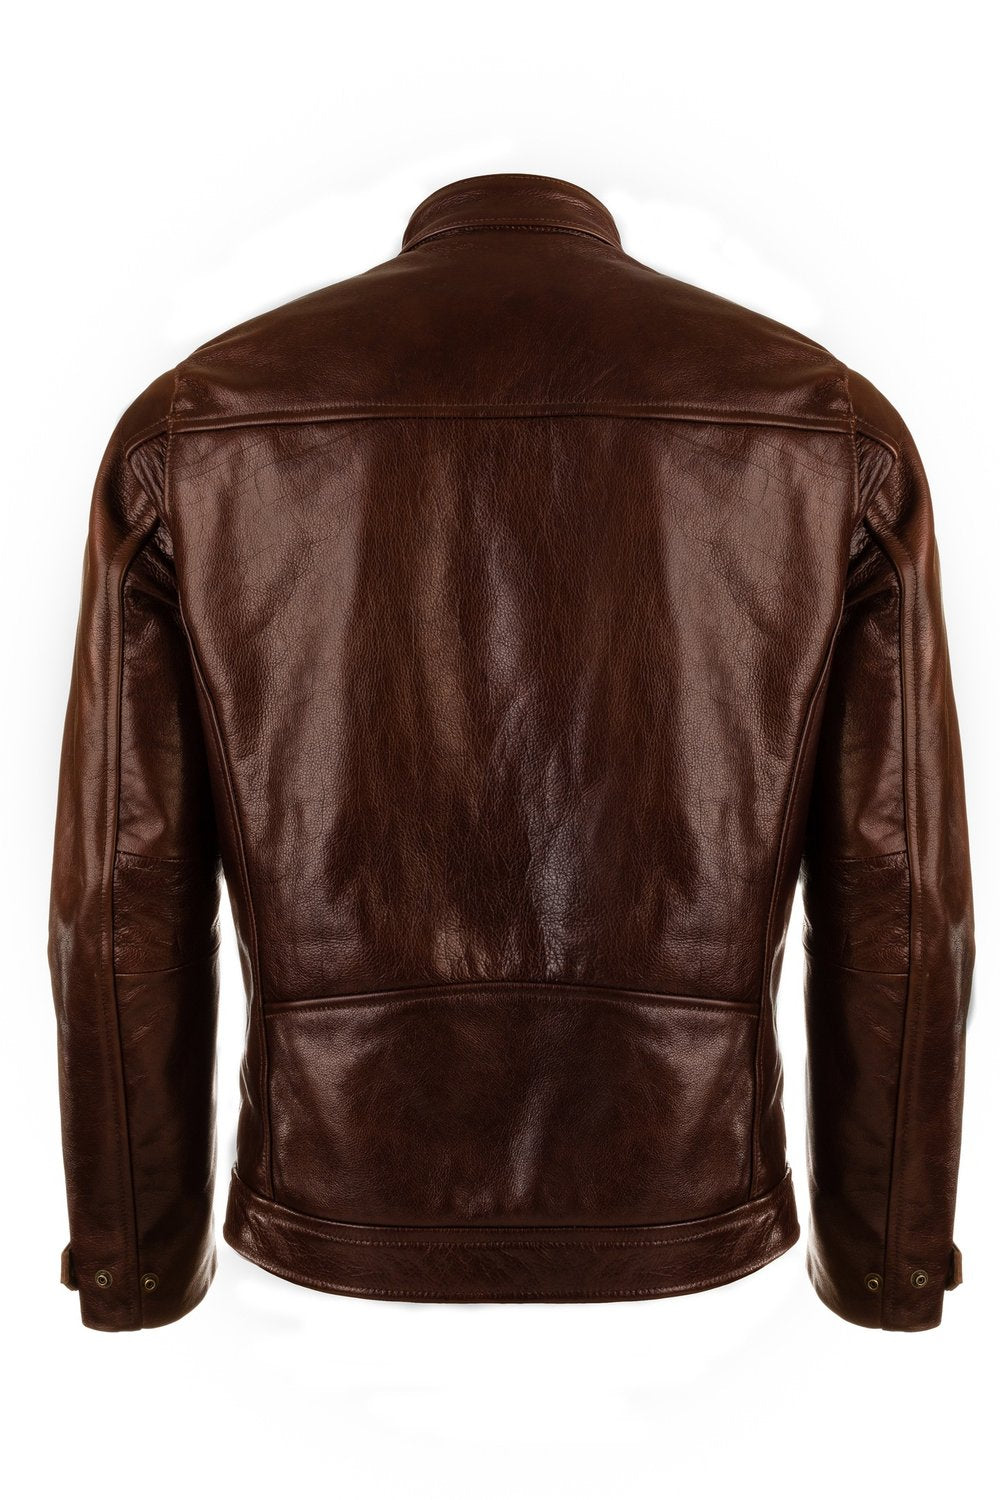 VKTRE- Heritage Leather Road Jacket